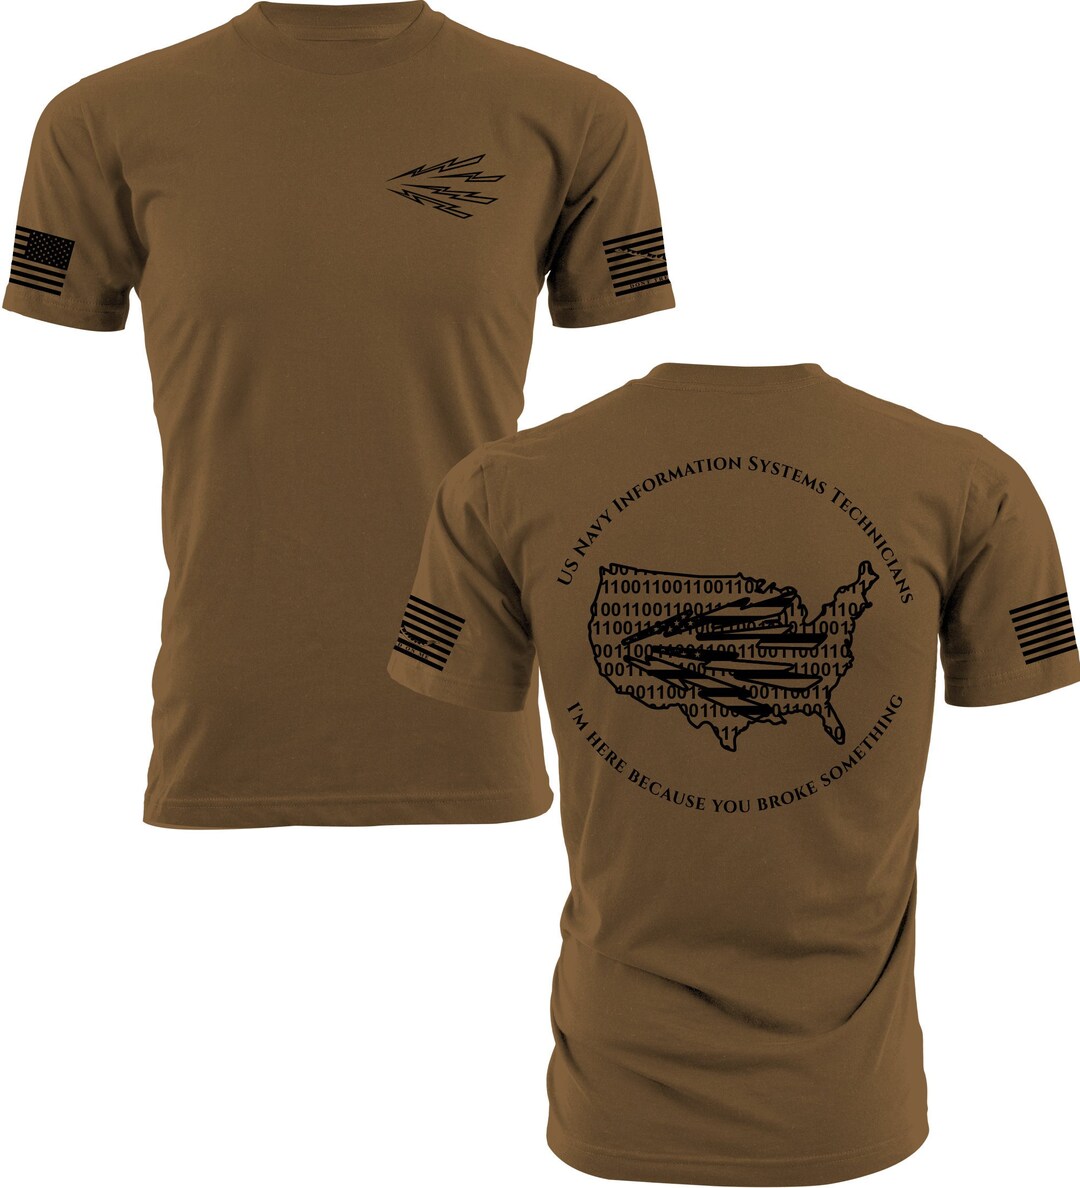 US Navy IT Shirt - Etsy